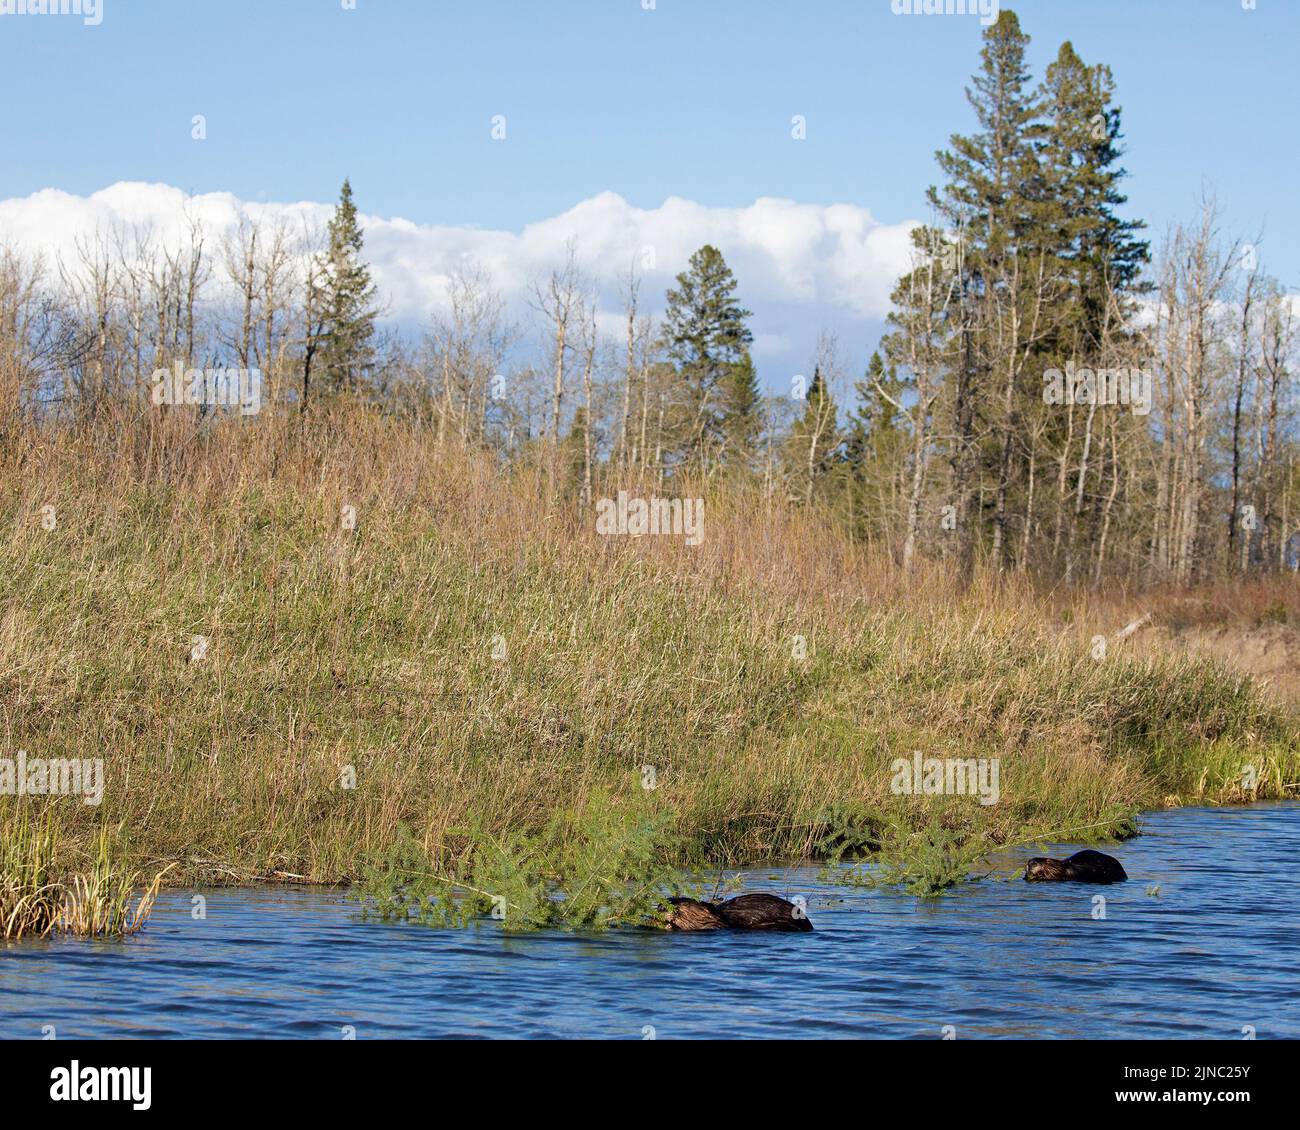 Kanadische Biber ernähren sich von jungen weißen Fichten am Rande eines Sees in einem Mischwaldökosystem, Kanada. Castor canadensis, Picea glauca Stockfoto